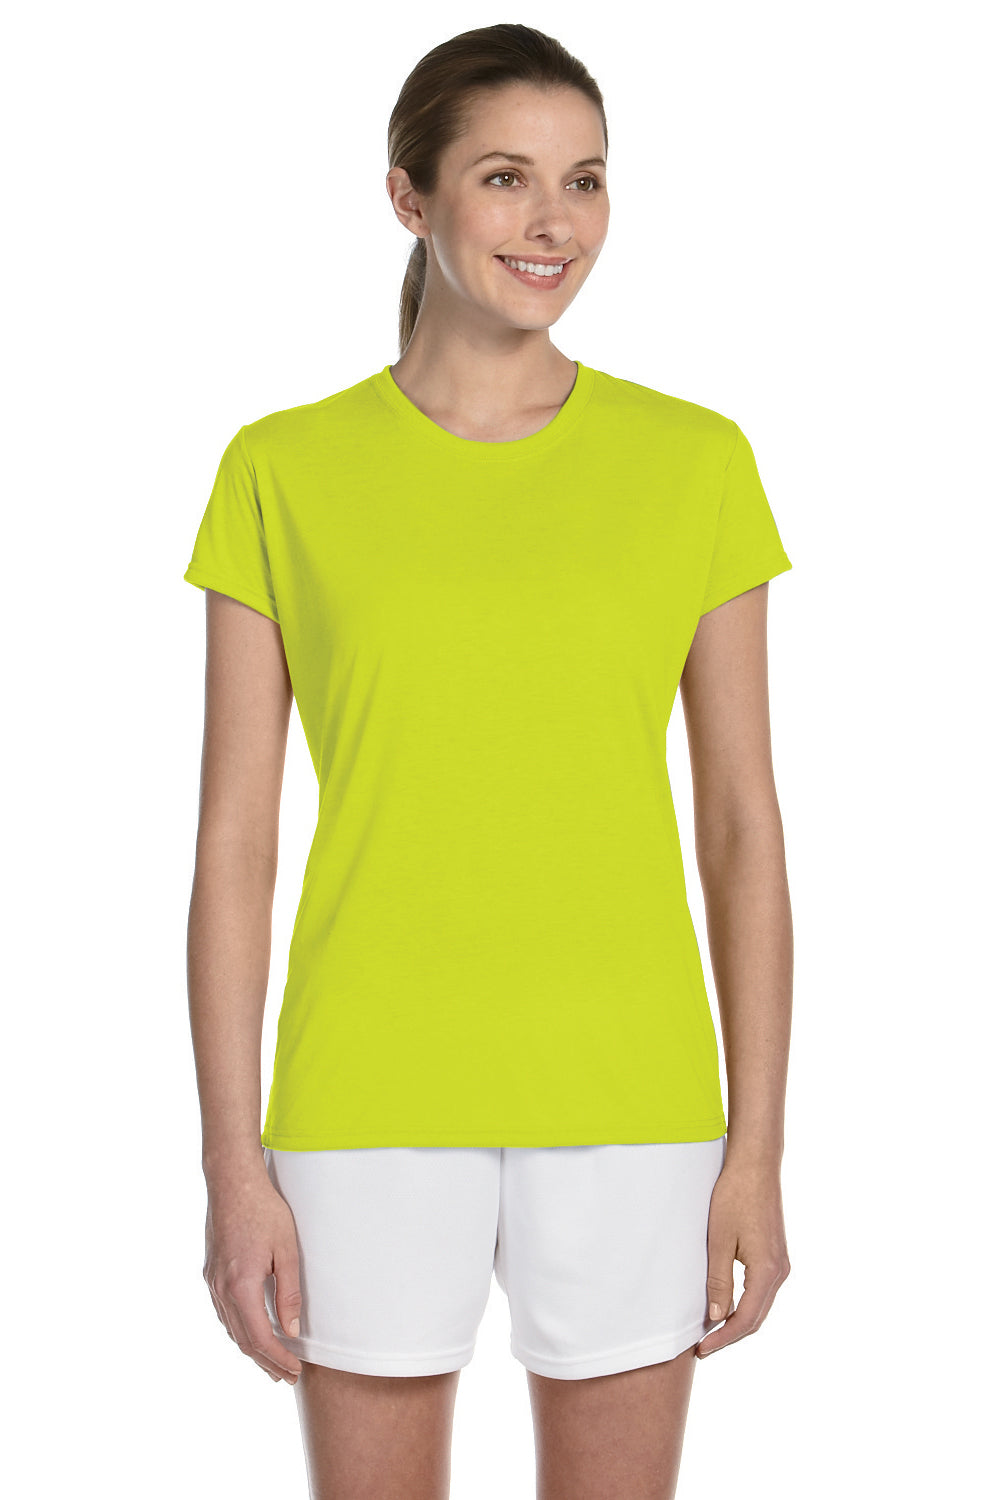 Gildan G420L Womens Performance Jersey Moisture Wicking Short Sleeve Crewneck T-Shirt Safety Green Front